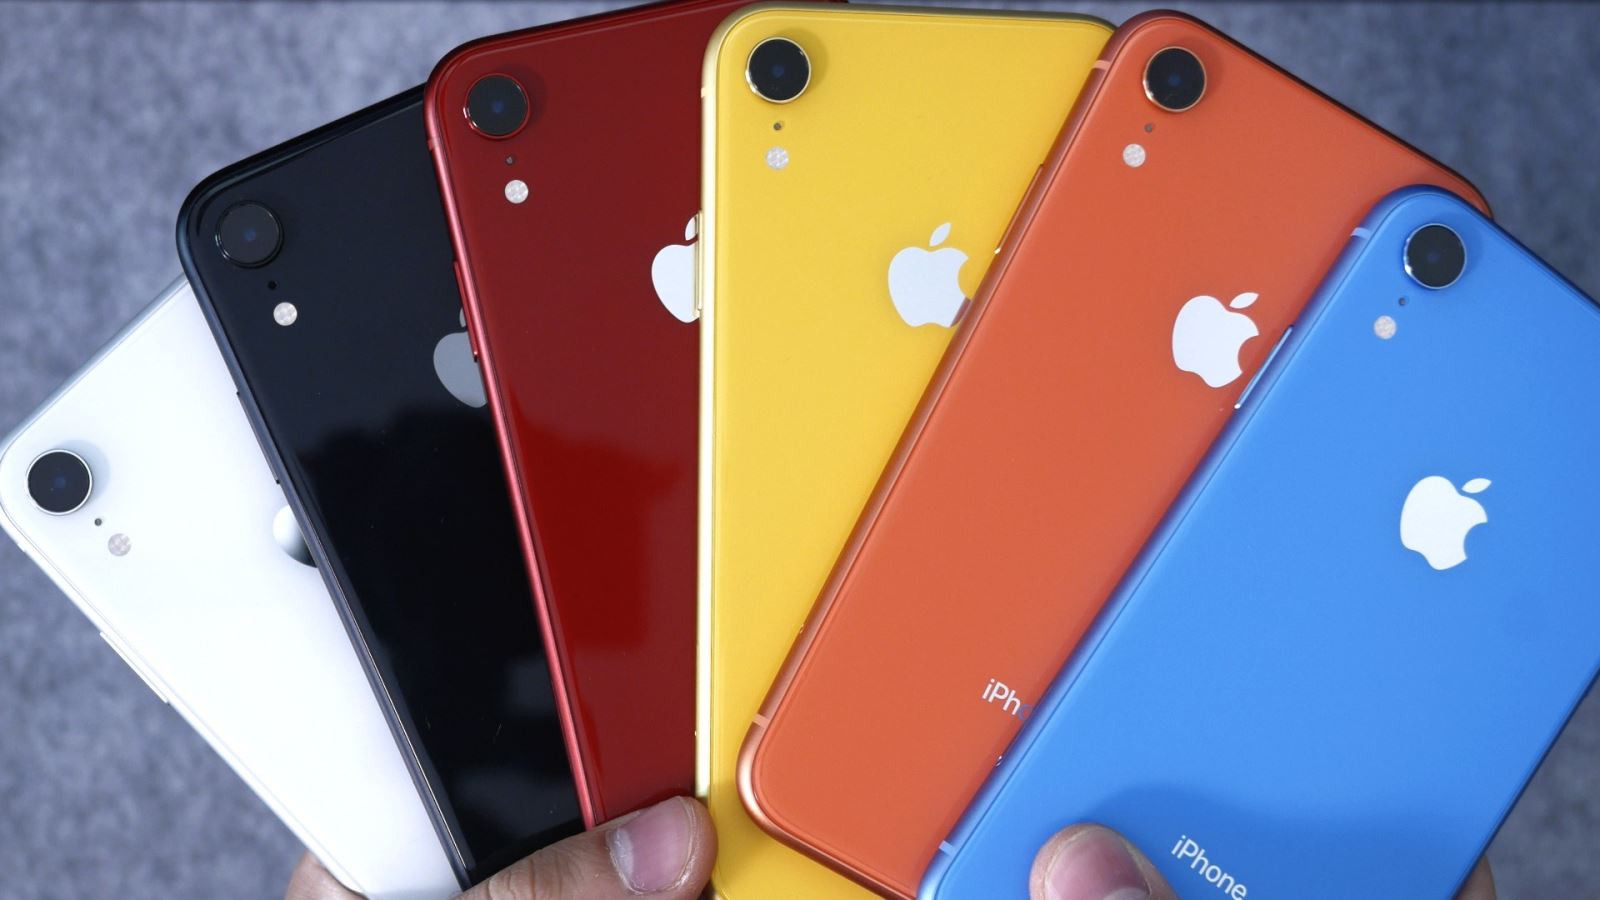 iPhone XR 2019 sẽ có 2 màu mới là Xanh lá cây và Tím oải hương -  Fptshop.com.vn